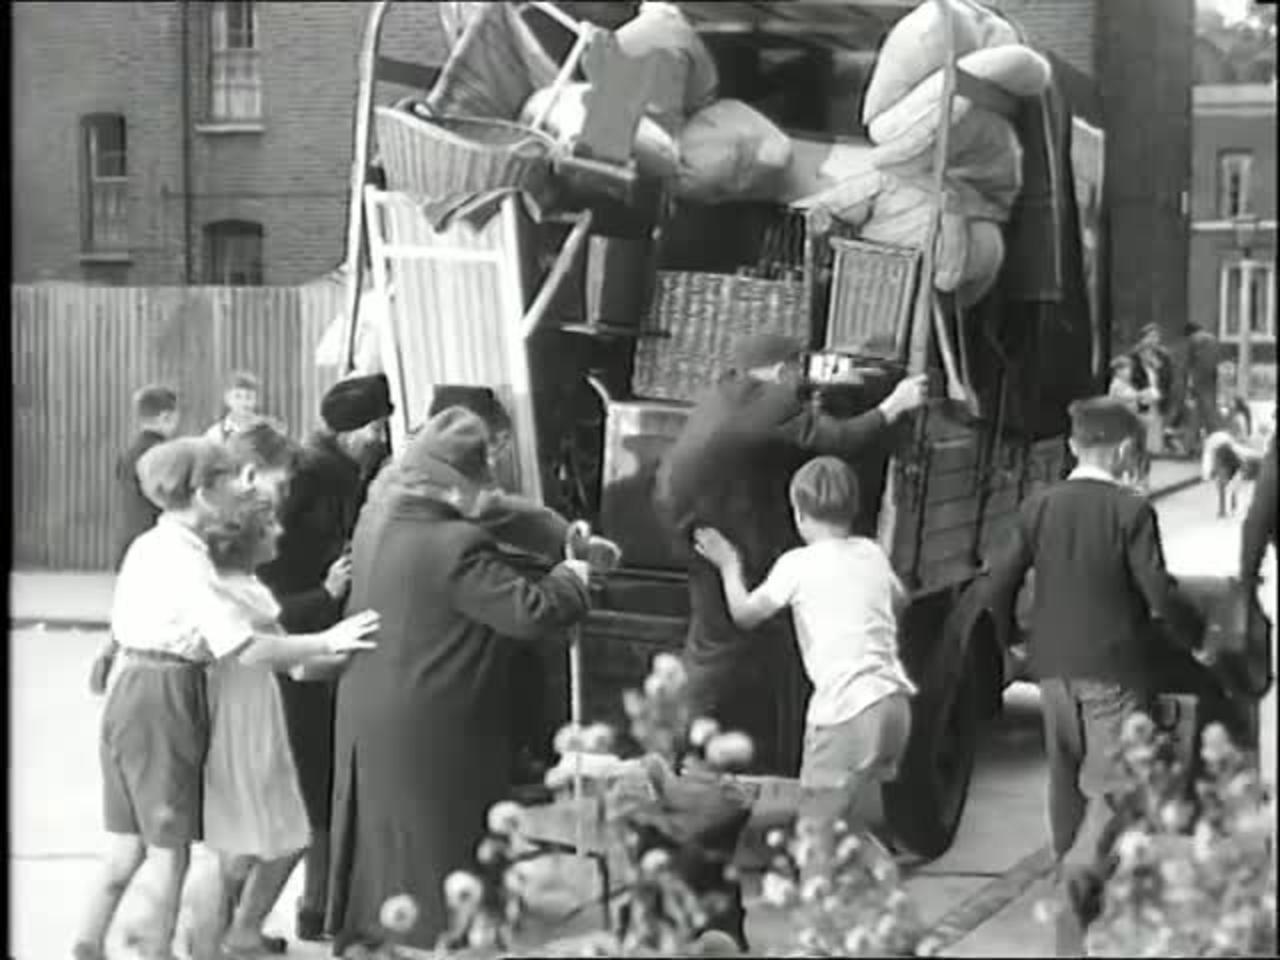 Adventure in the Hopfields ... 1954 British children's film trailer